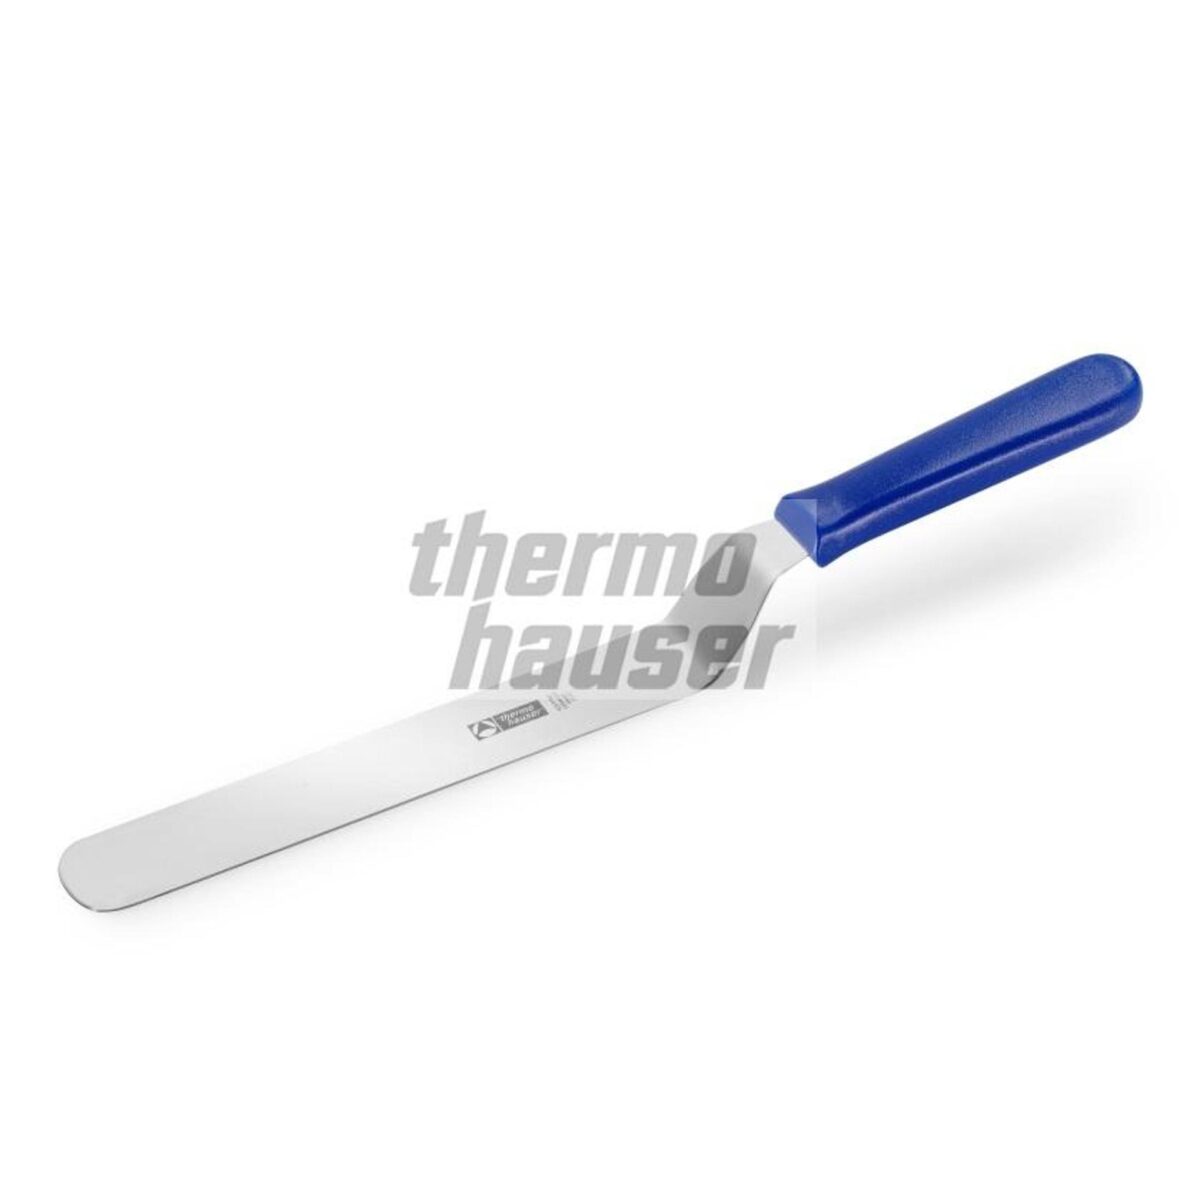 Thermohauser Palet Bıçağı Eğik 20 Cm